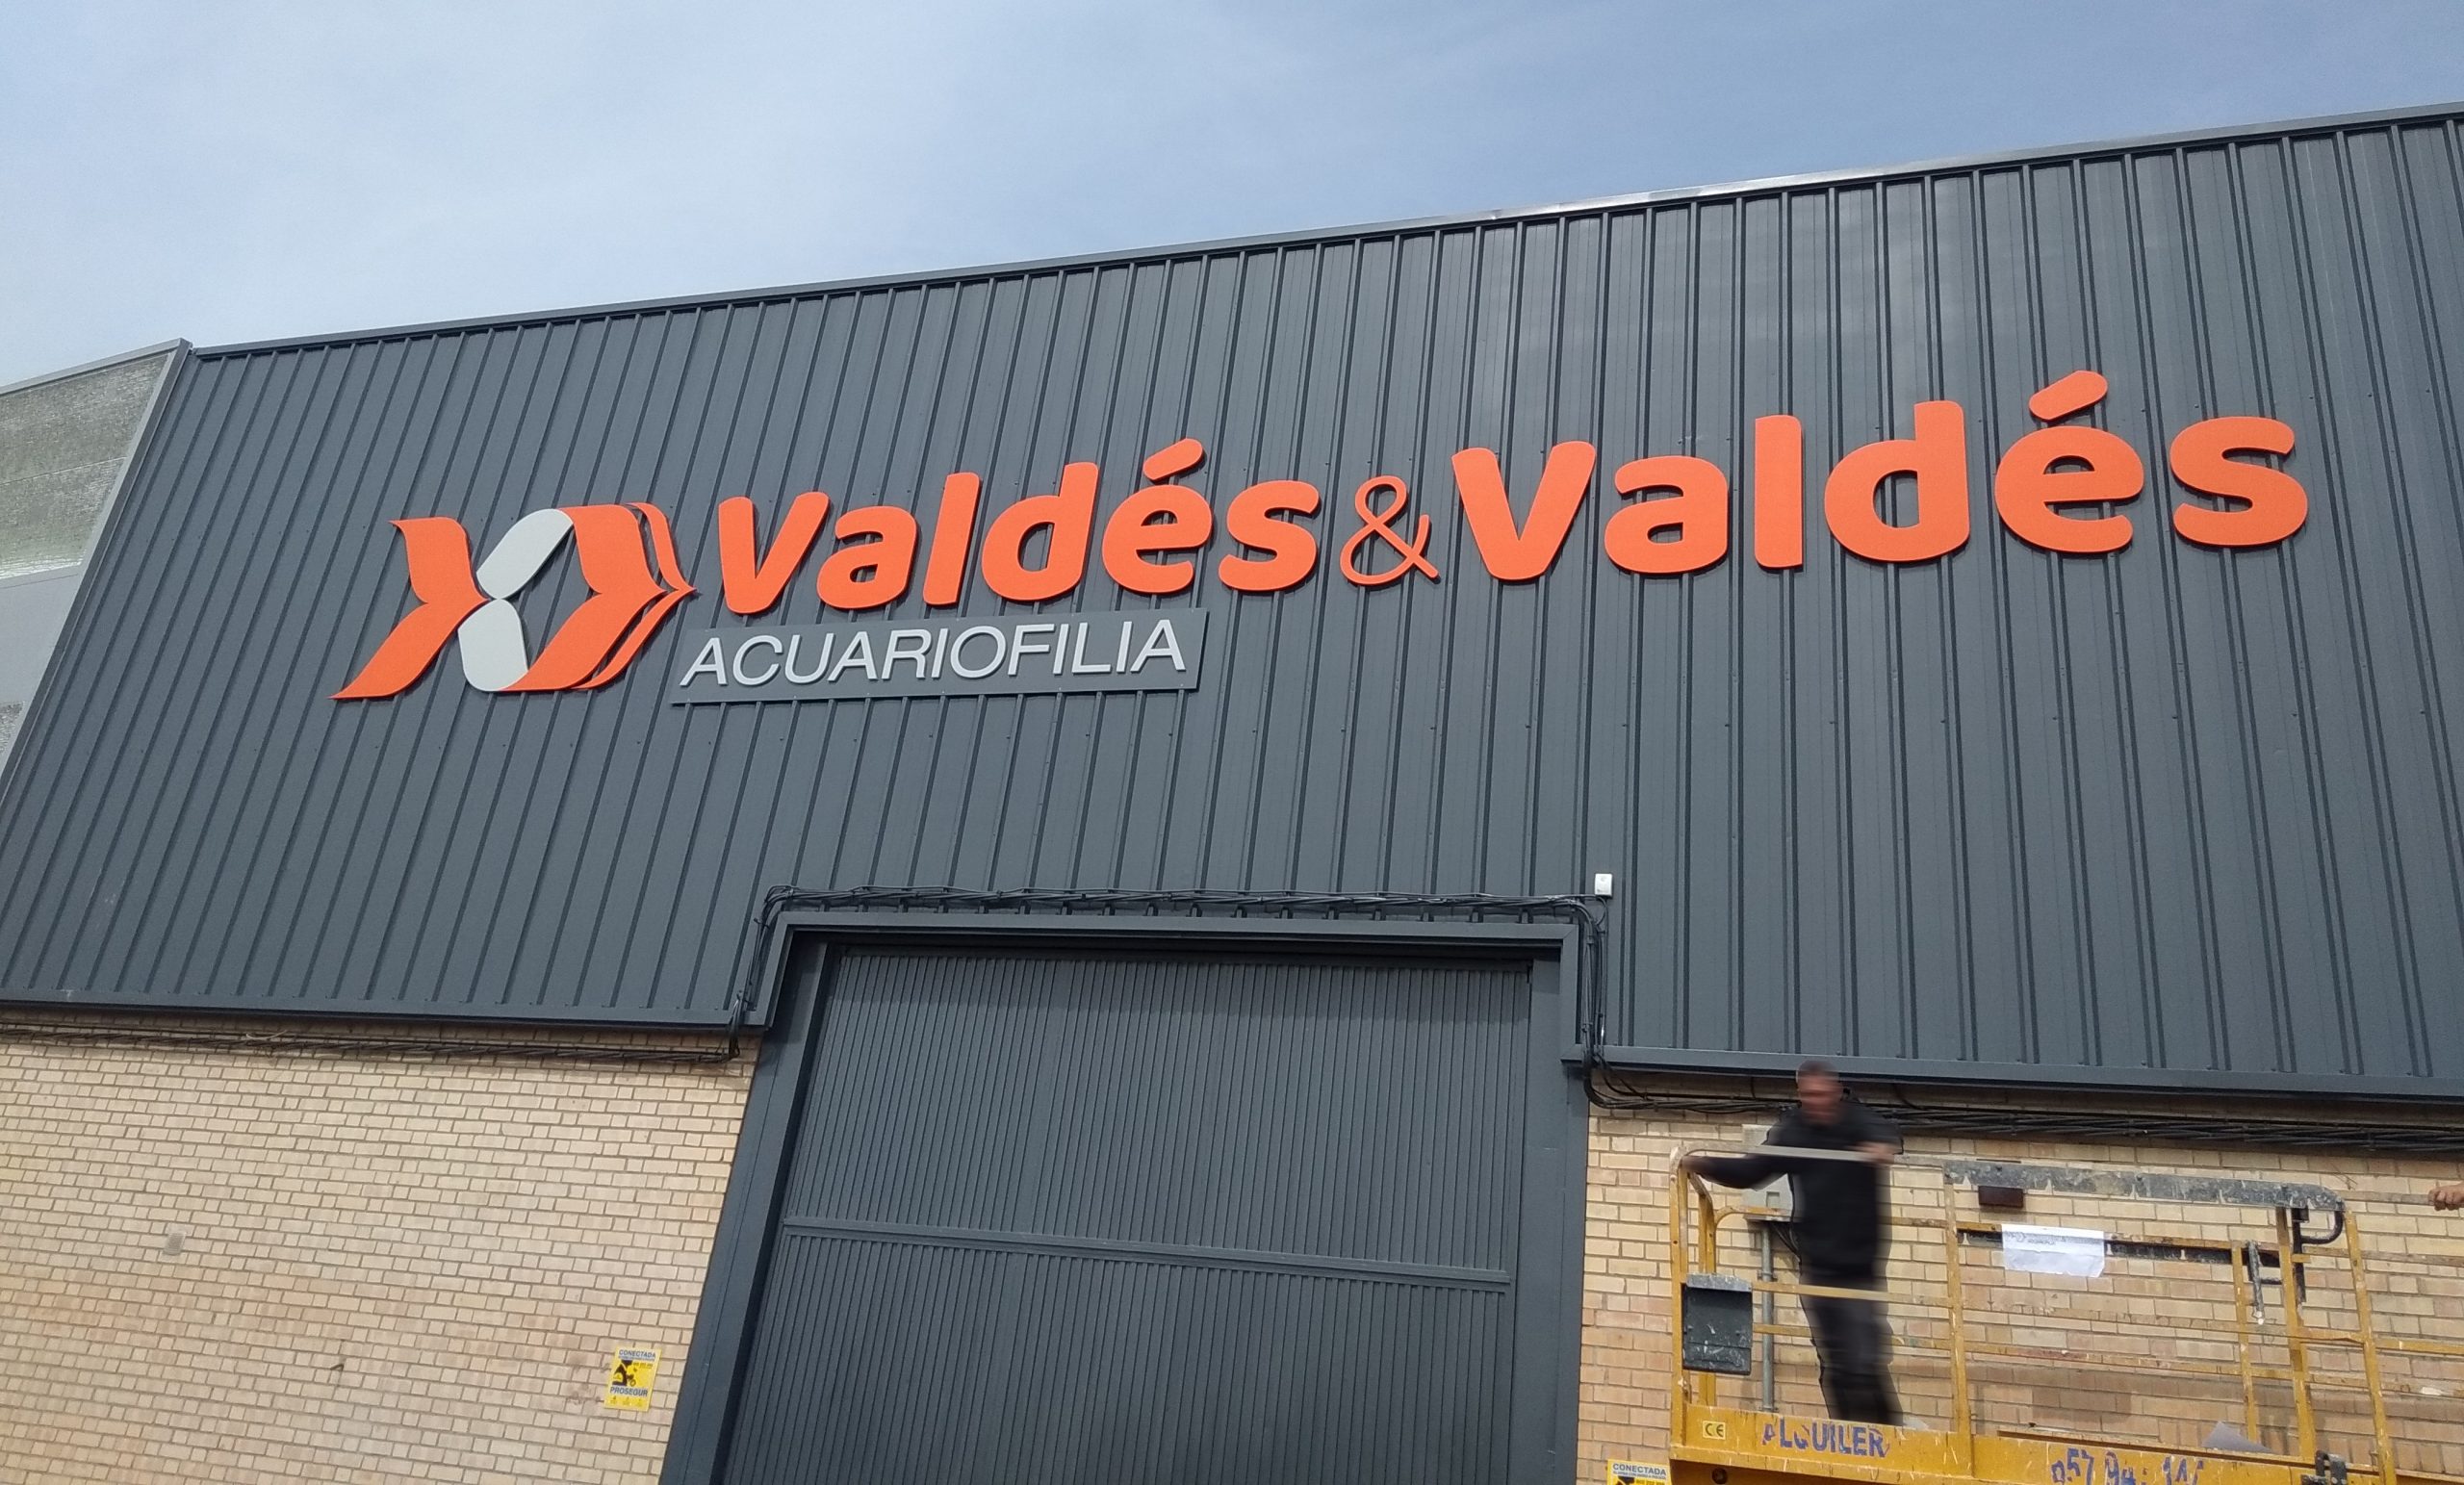 Valdés & Valdés